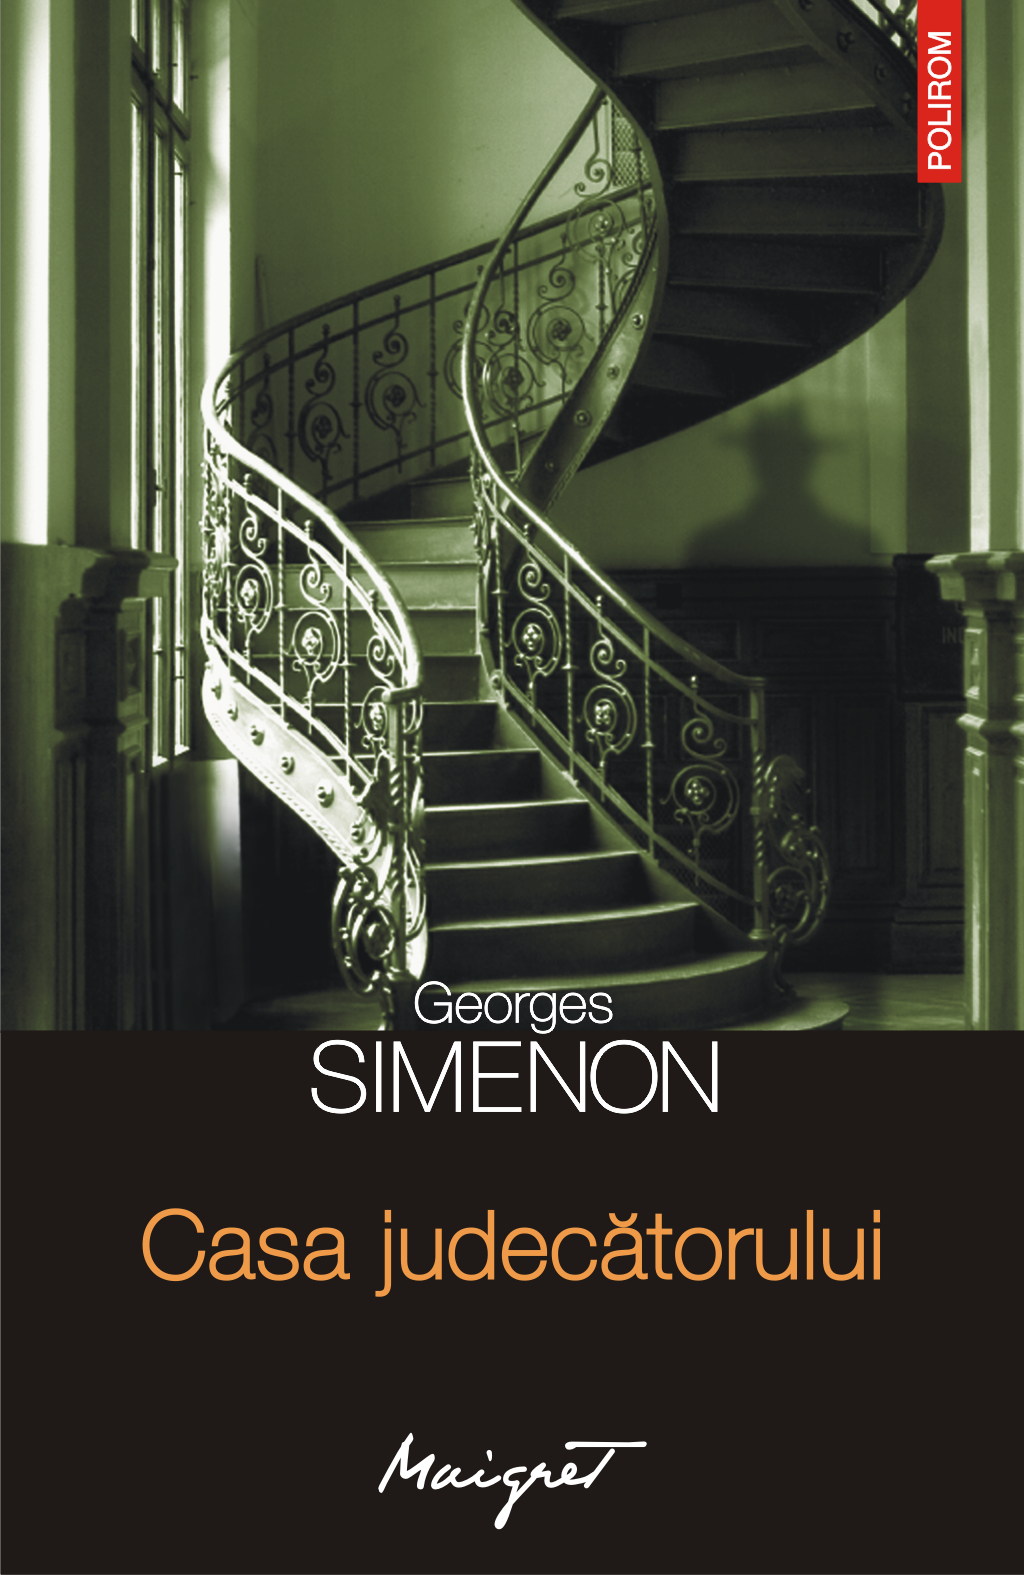 eBook Casa judecatorului - Georges Simenon